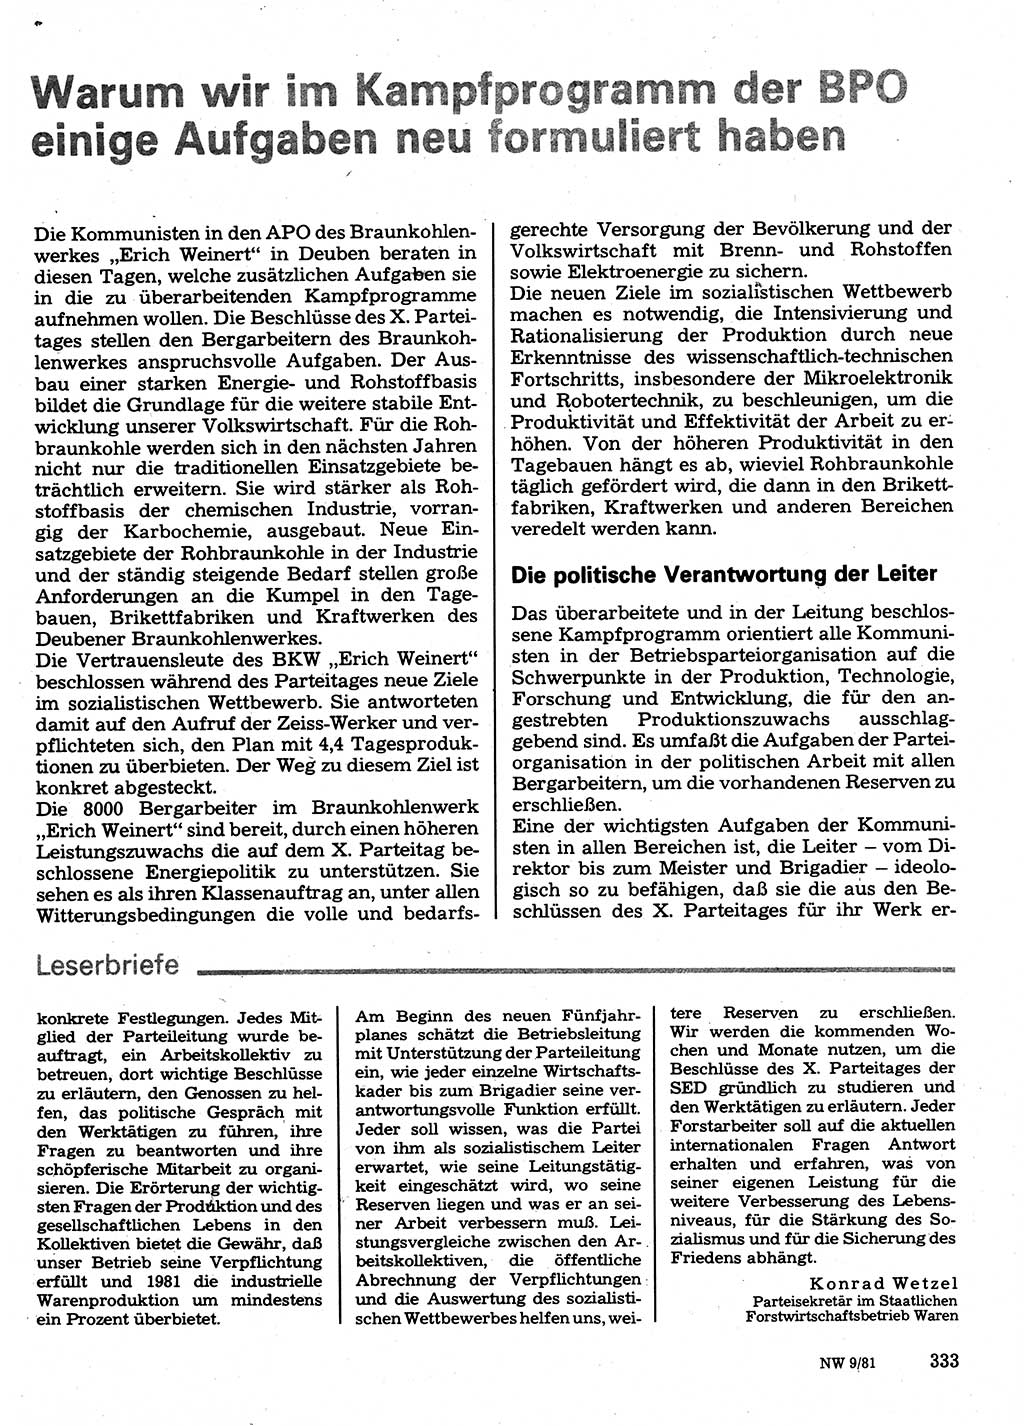 Neuer Weg (NW), Organ des Zentralkomitees (ZK) der SED (Sozialistische Einheitspartei Deutschlands) für Fragen des Parteilebens, 36. Jahrgang [Deutsche Demokratische Republik (DDR)] 1981, Seite 333 (NW ZK SED DDR 1981, S. 333)